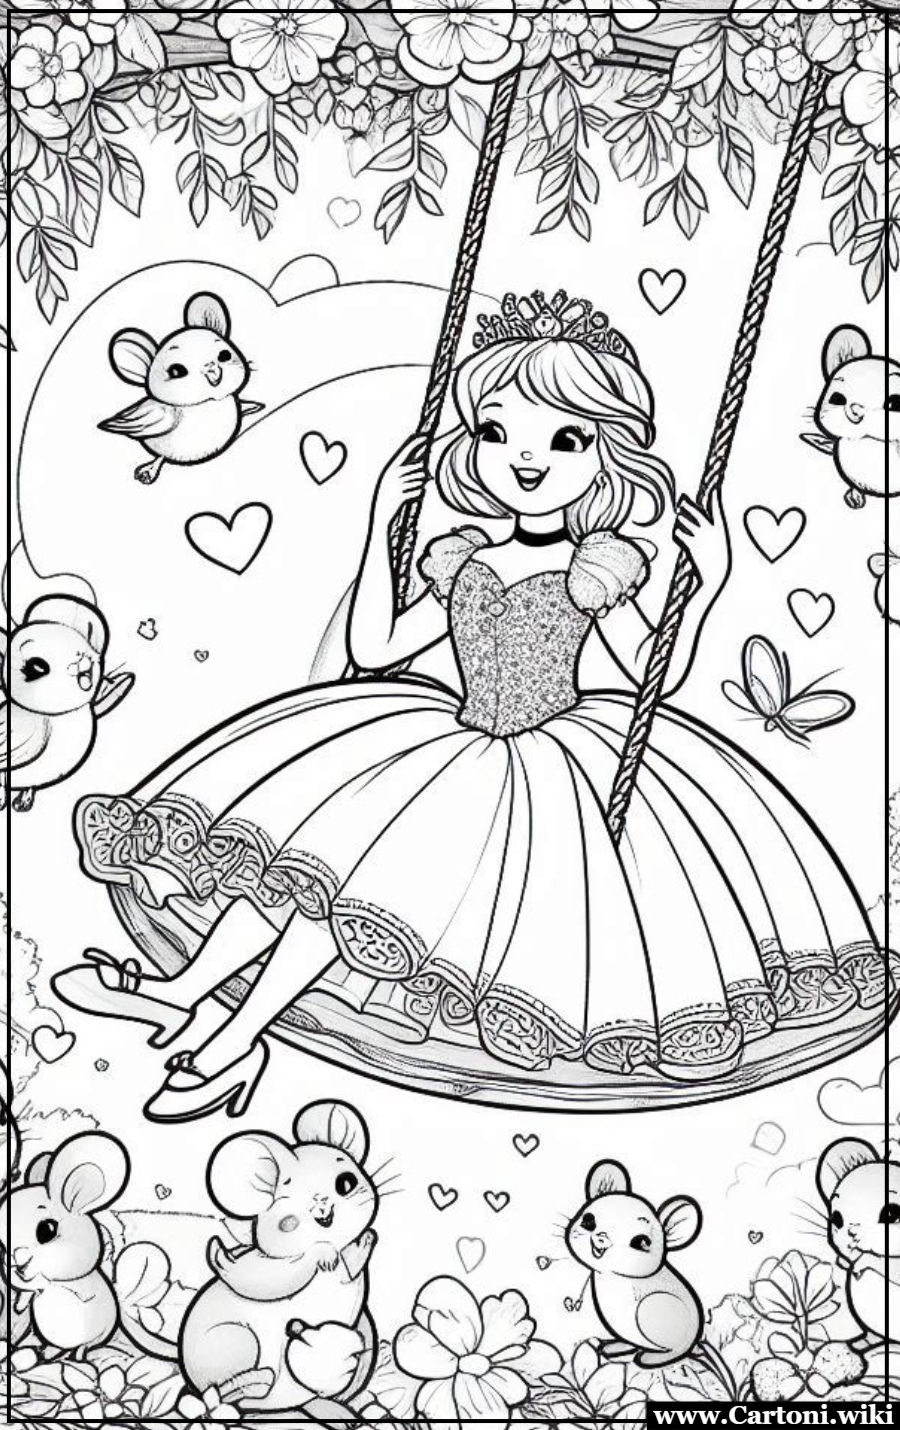 Cinderella sullAltalena Circondata da Fiori Cenerentola,Disegni da colorare,Immagini da colorare,immagini da stampare